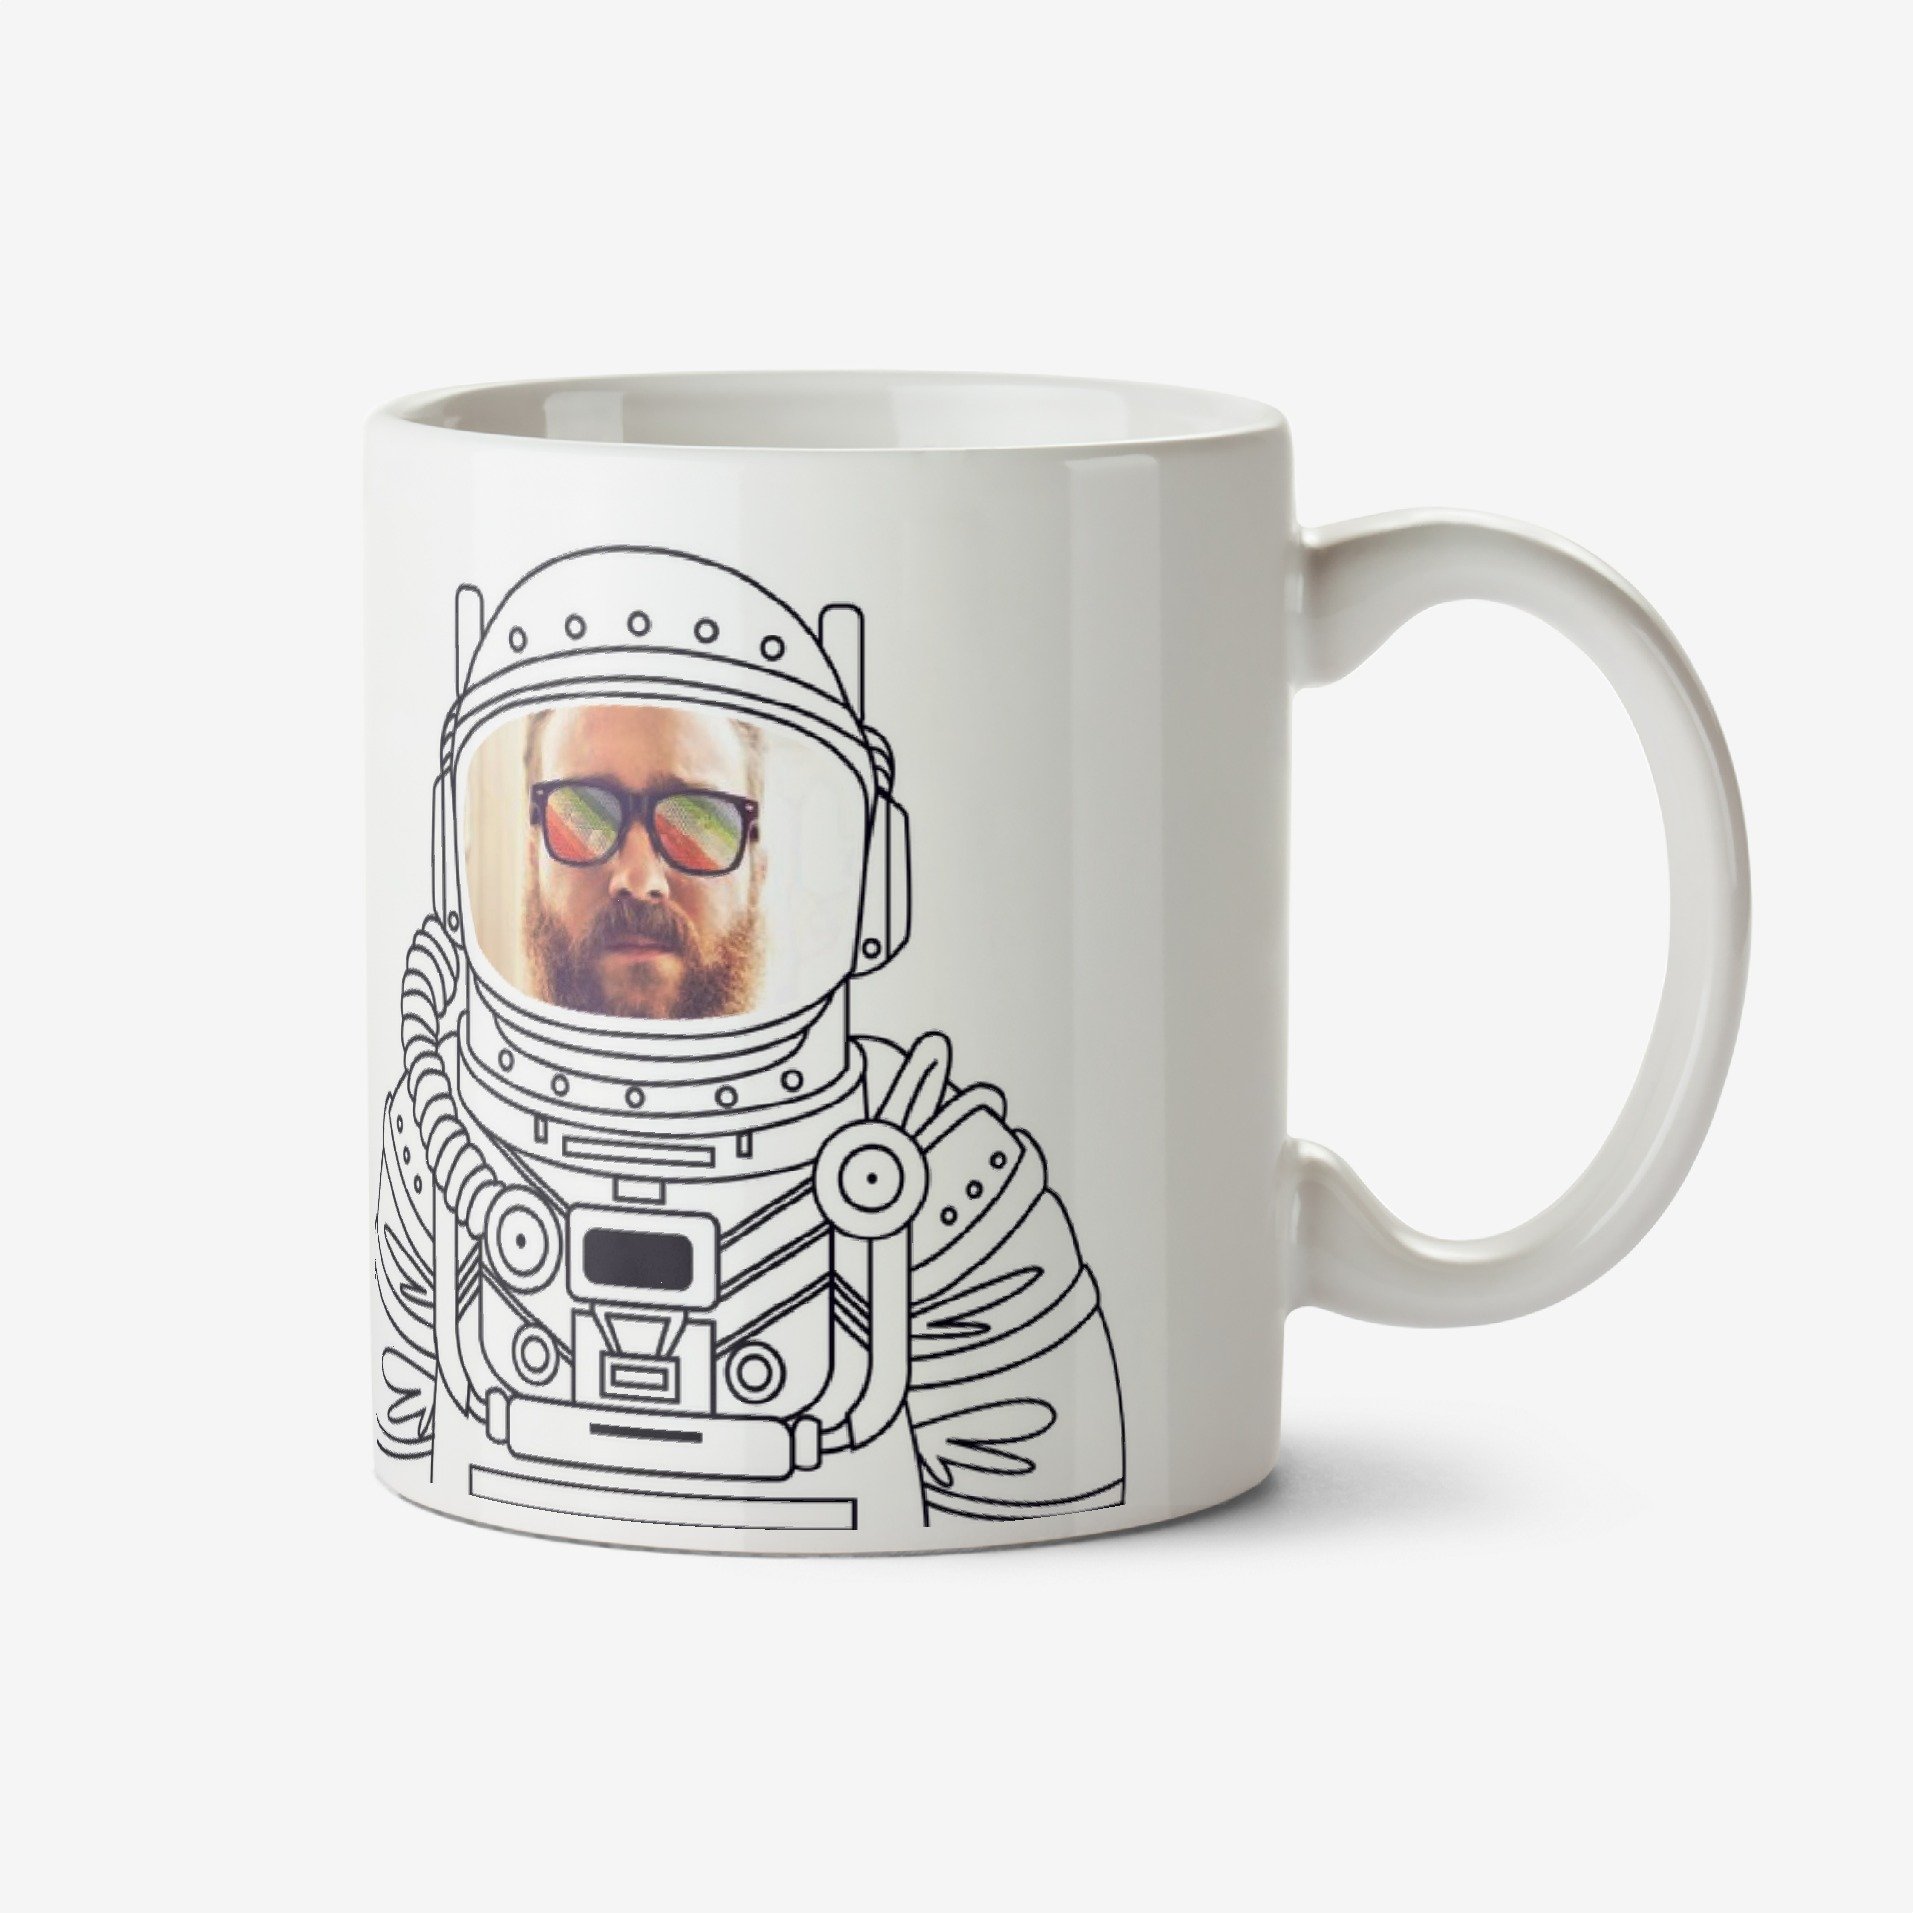 Moonpig I Like Space Man Photo Upload Mug Ceramic Mug